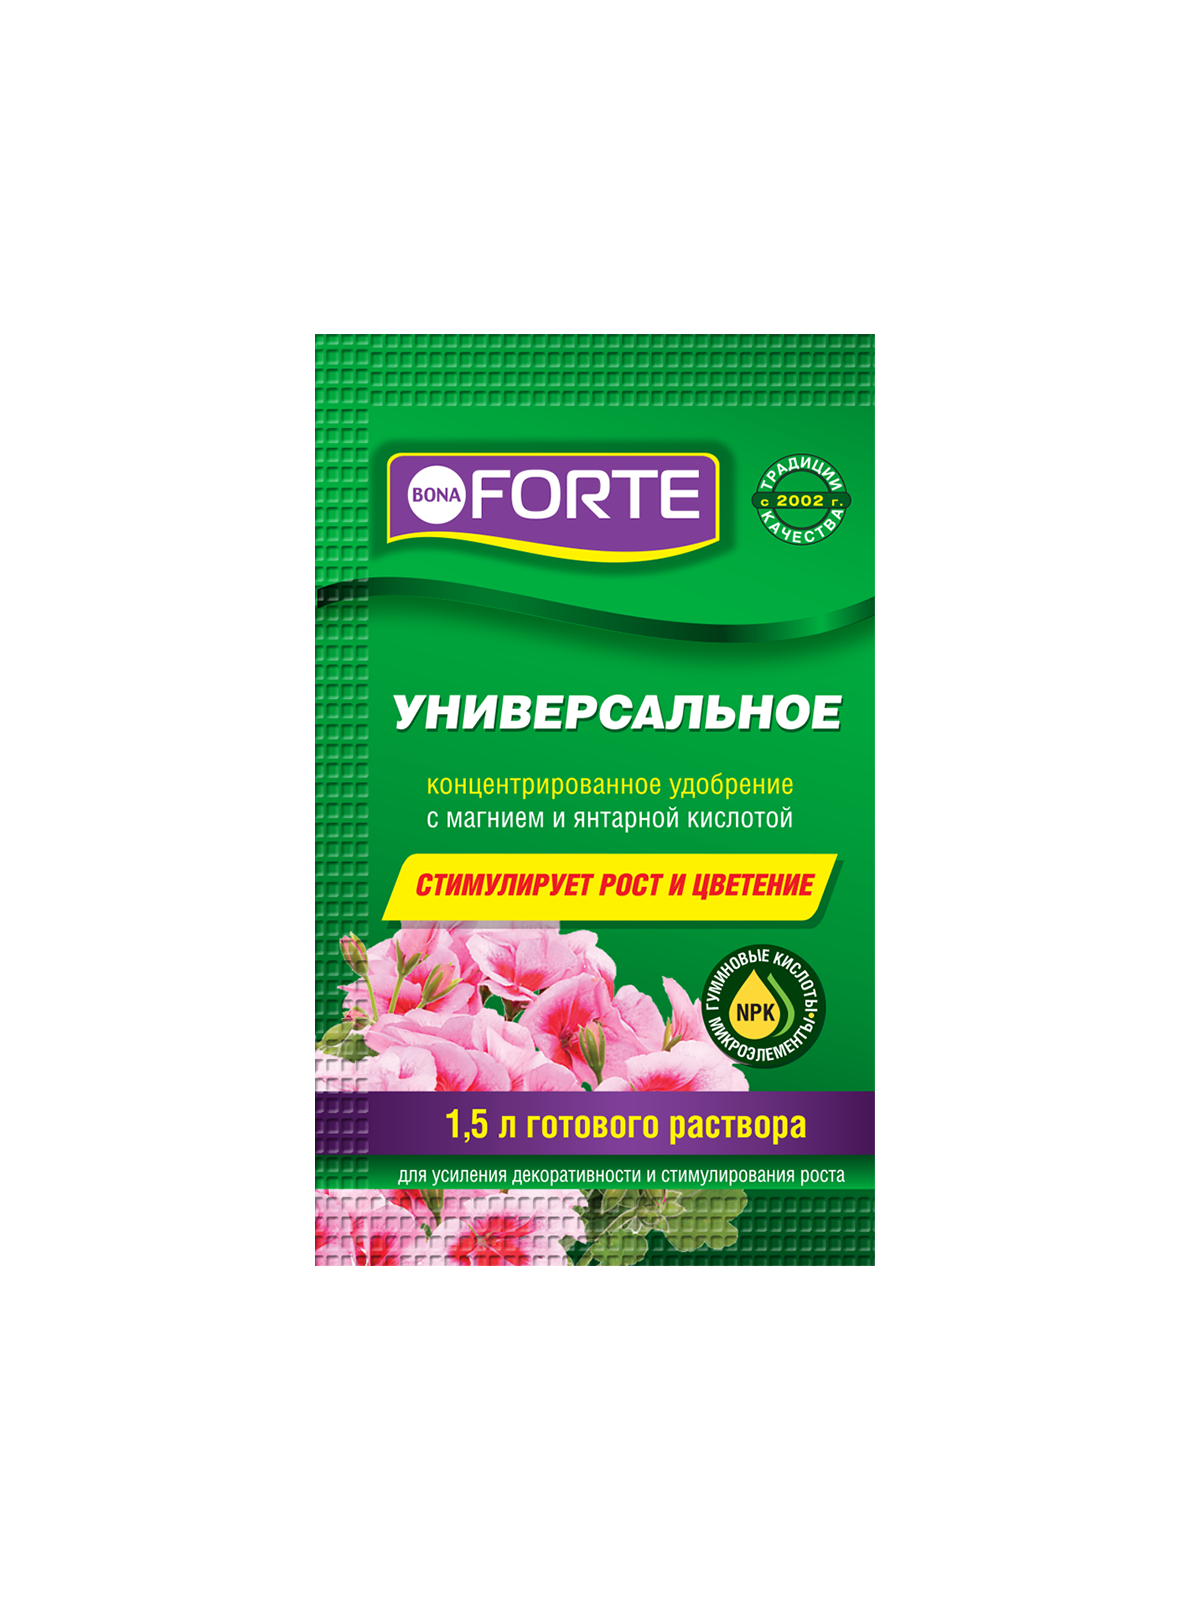 Жидкое органо-минеральное удобрение для орхидей Bona Forte, пакет 10 мл